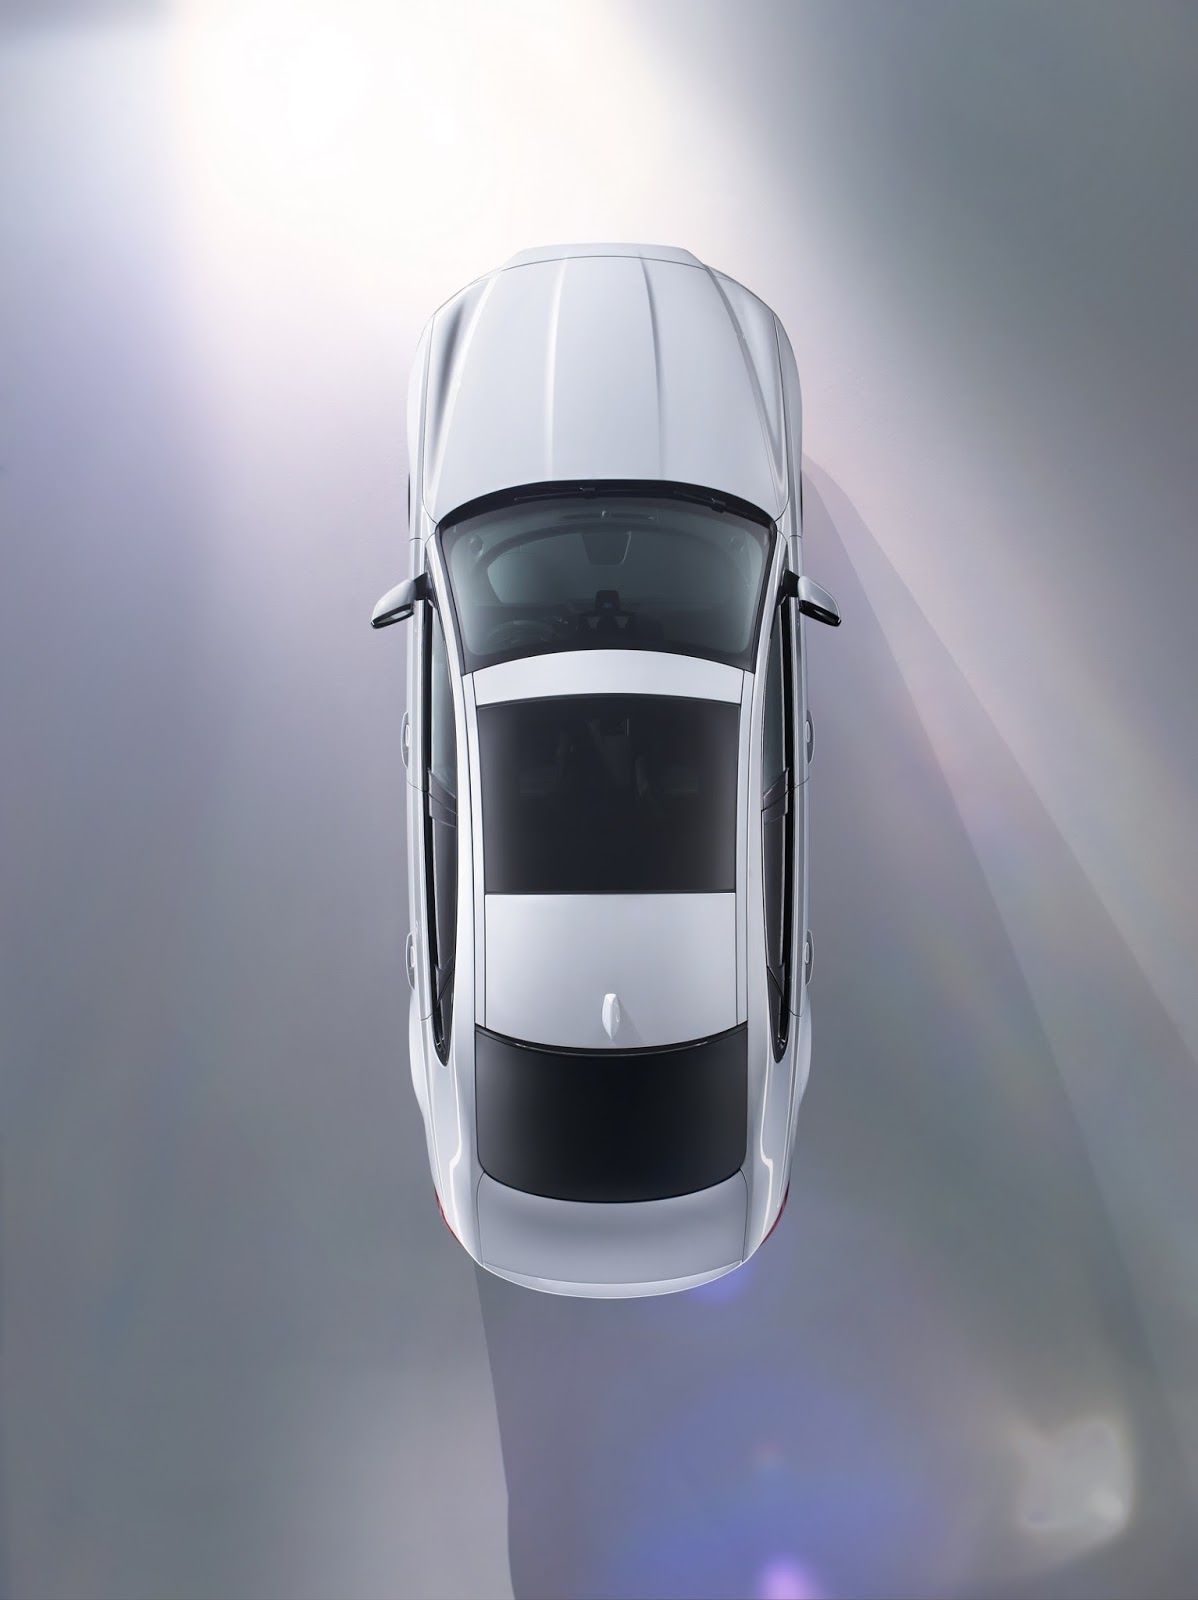 Jaguar tung teaser cho chiếc sedan XF hoàn toàn mới